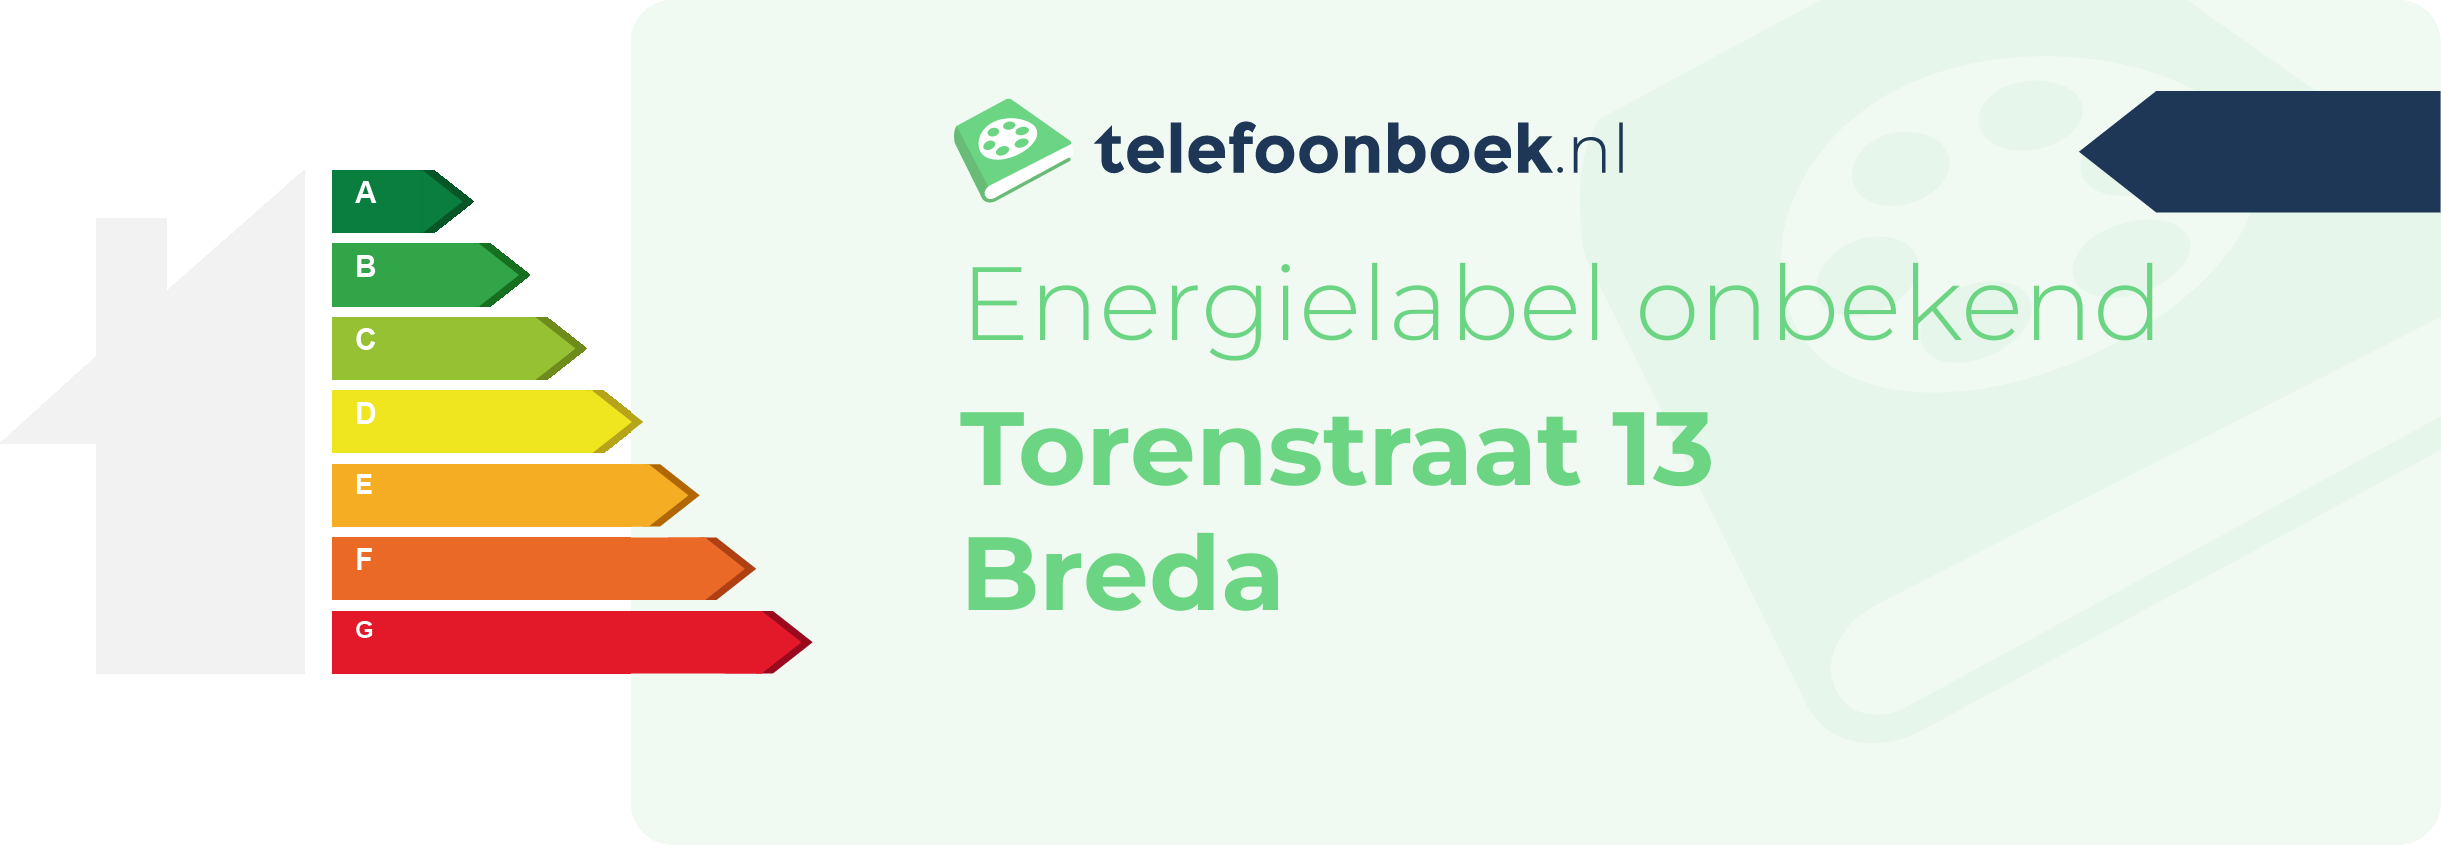 Energielabel Torenstraat 13 Breda